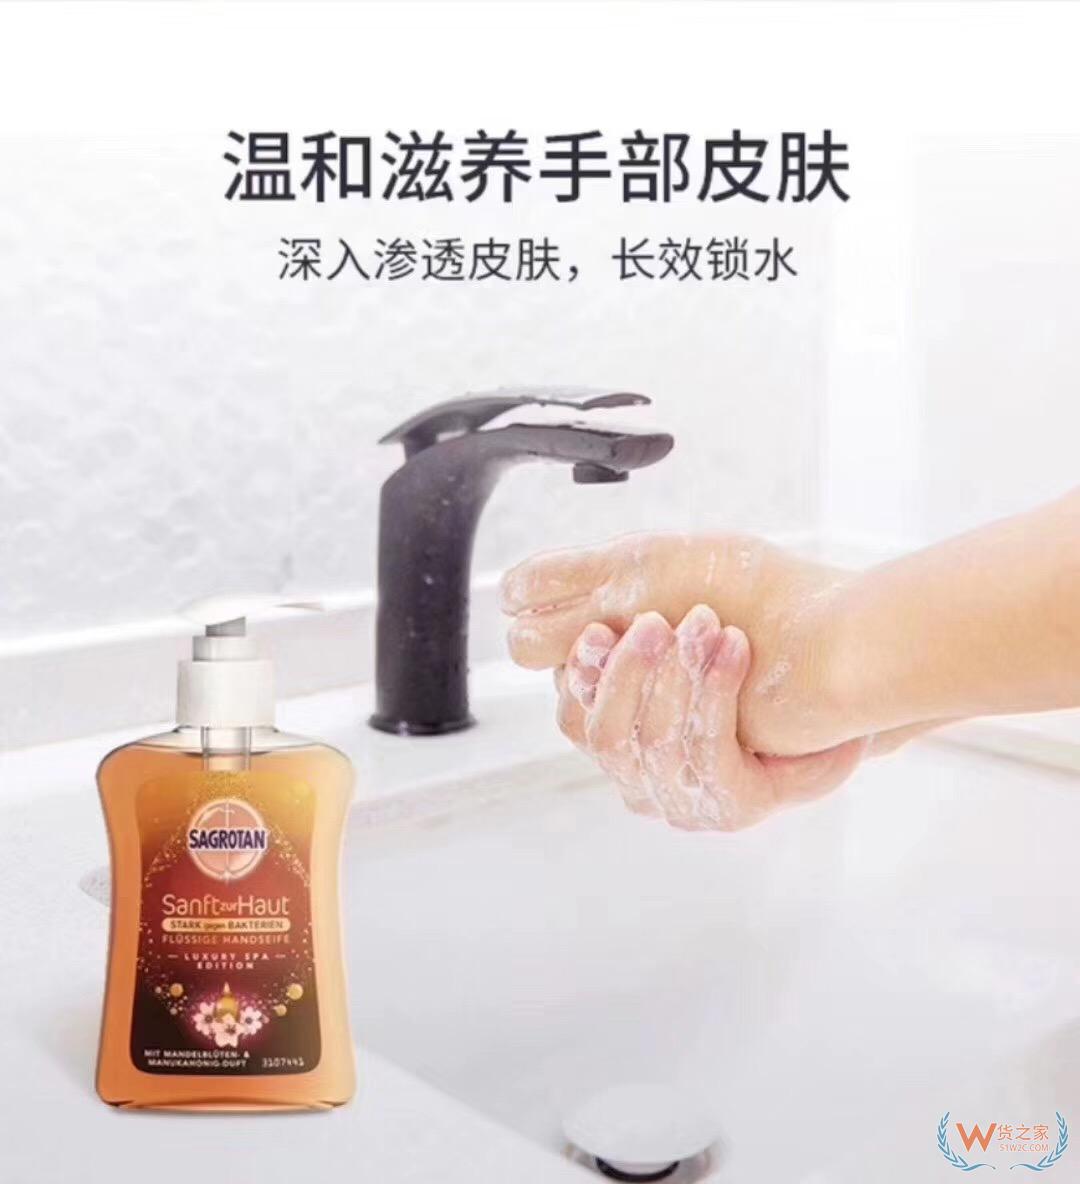 德国Sagrotan 杏花蜂蜜洗手液250ml/瓶—货之家